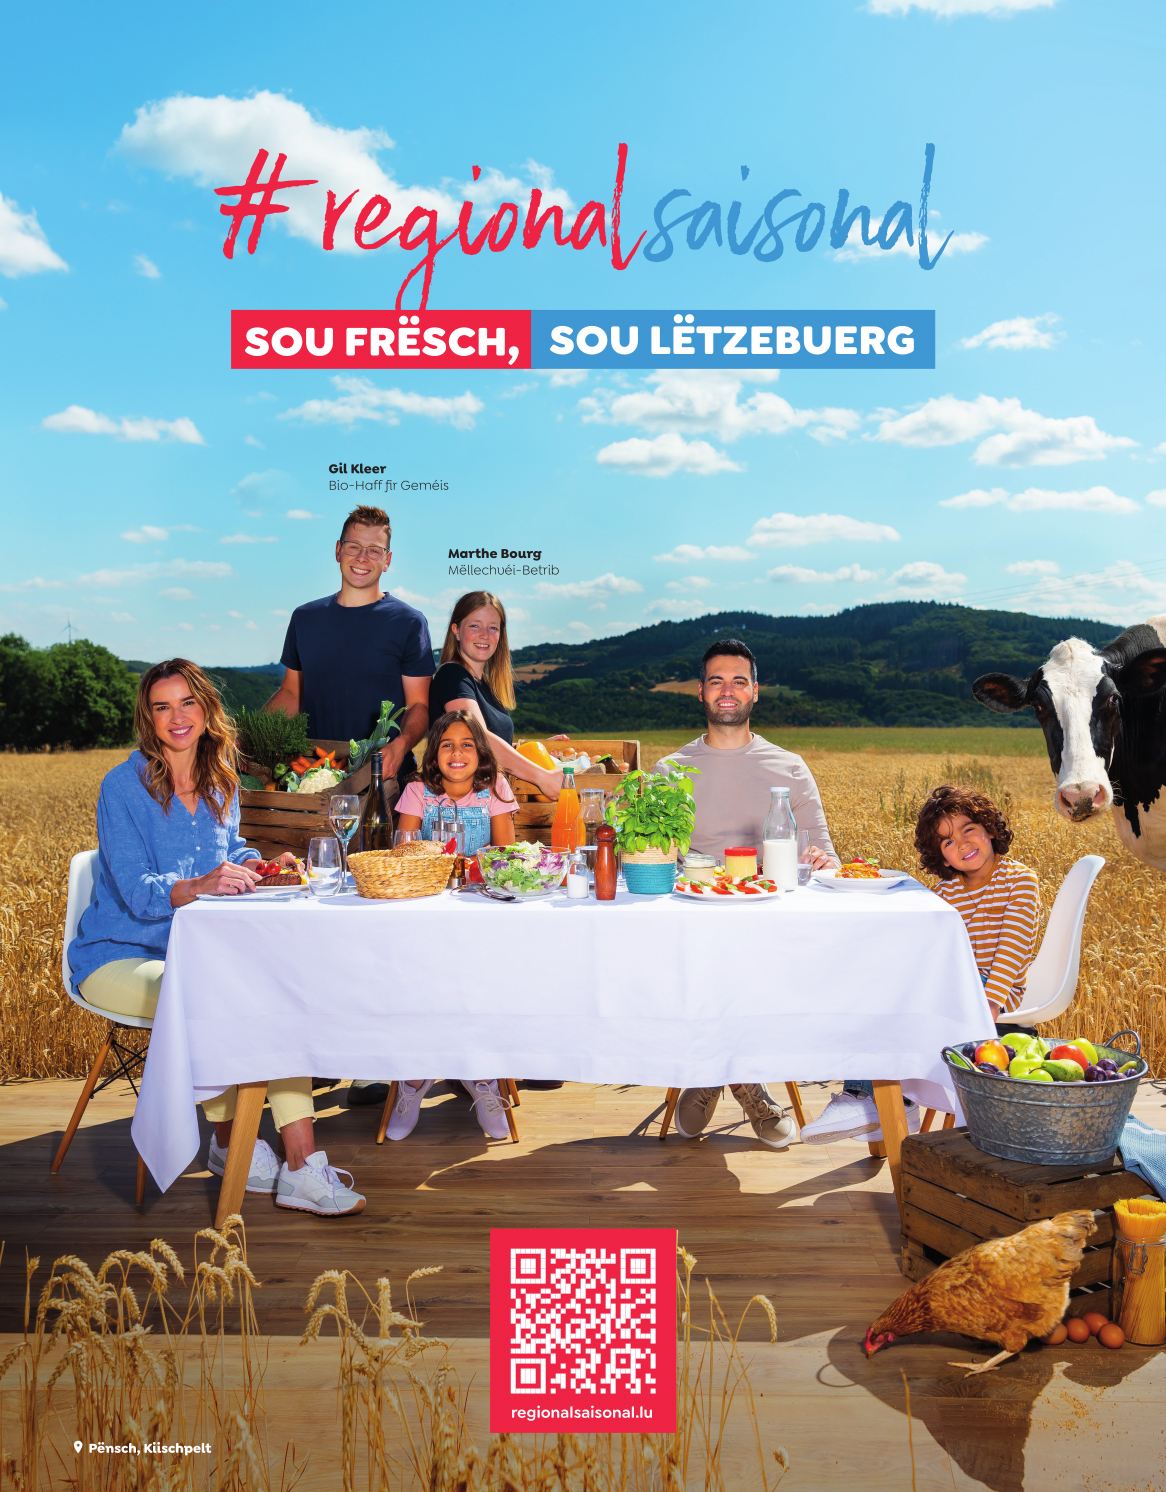 Das Plakat der Kampagne „Sou frësch, sou Lëtzebuerg“ zeigt eine Familie am Esstisch mitten in einem Weizenfeld. Der Tisch ist mit Lebensmitteln der Saison und aus der Region gedeckt.